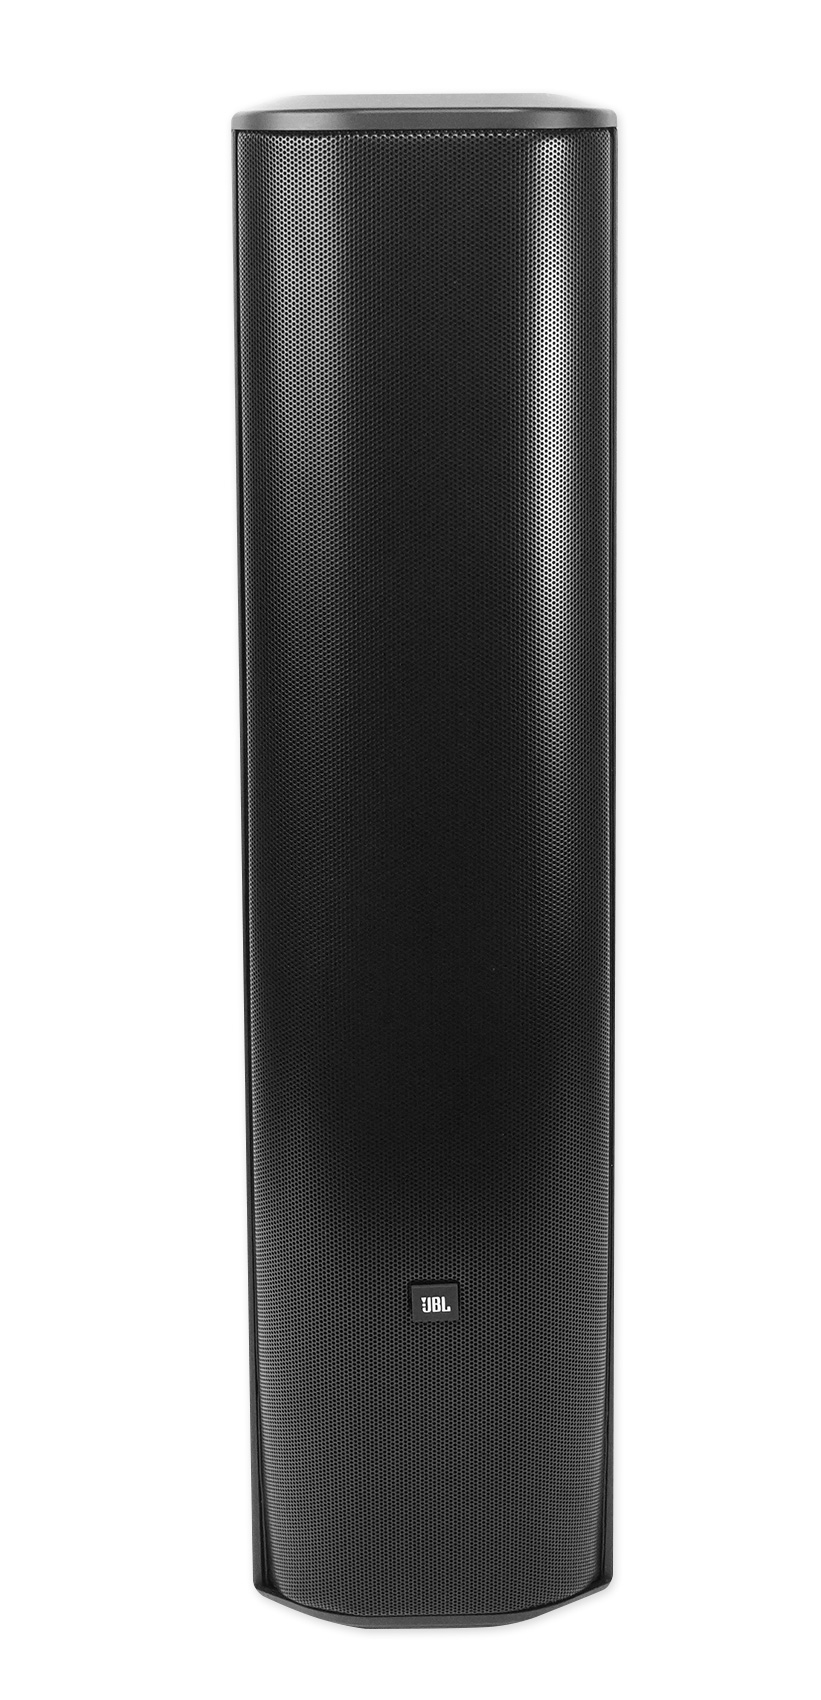 JBL CBT 70J-1 500w 2-Way Swivel Wall Mount Line Array Column Speaker in Black - image 1 of 12